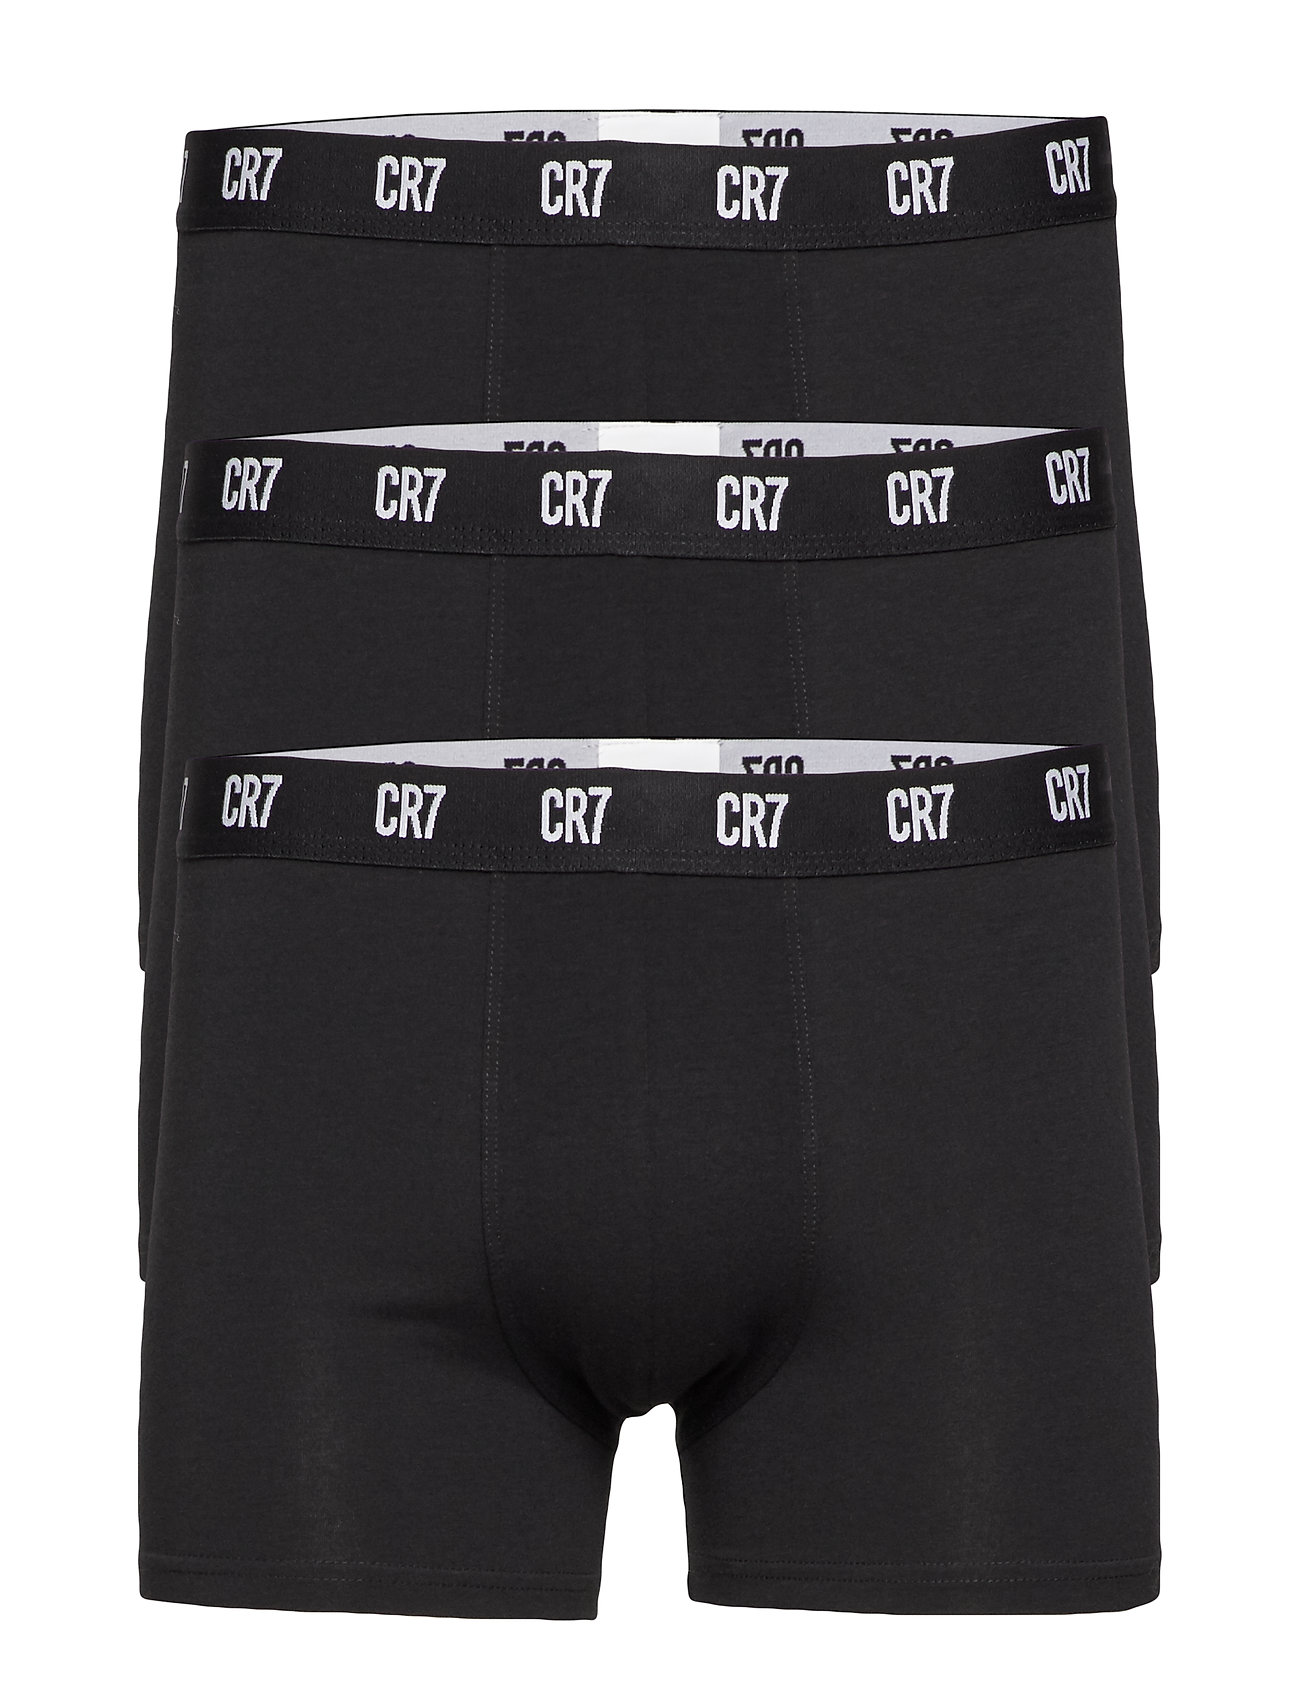 Men's 3-Pack CR7 Bamboo Trunks – CR7 Underwear